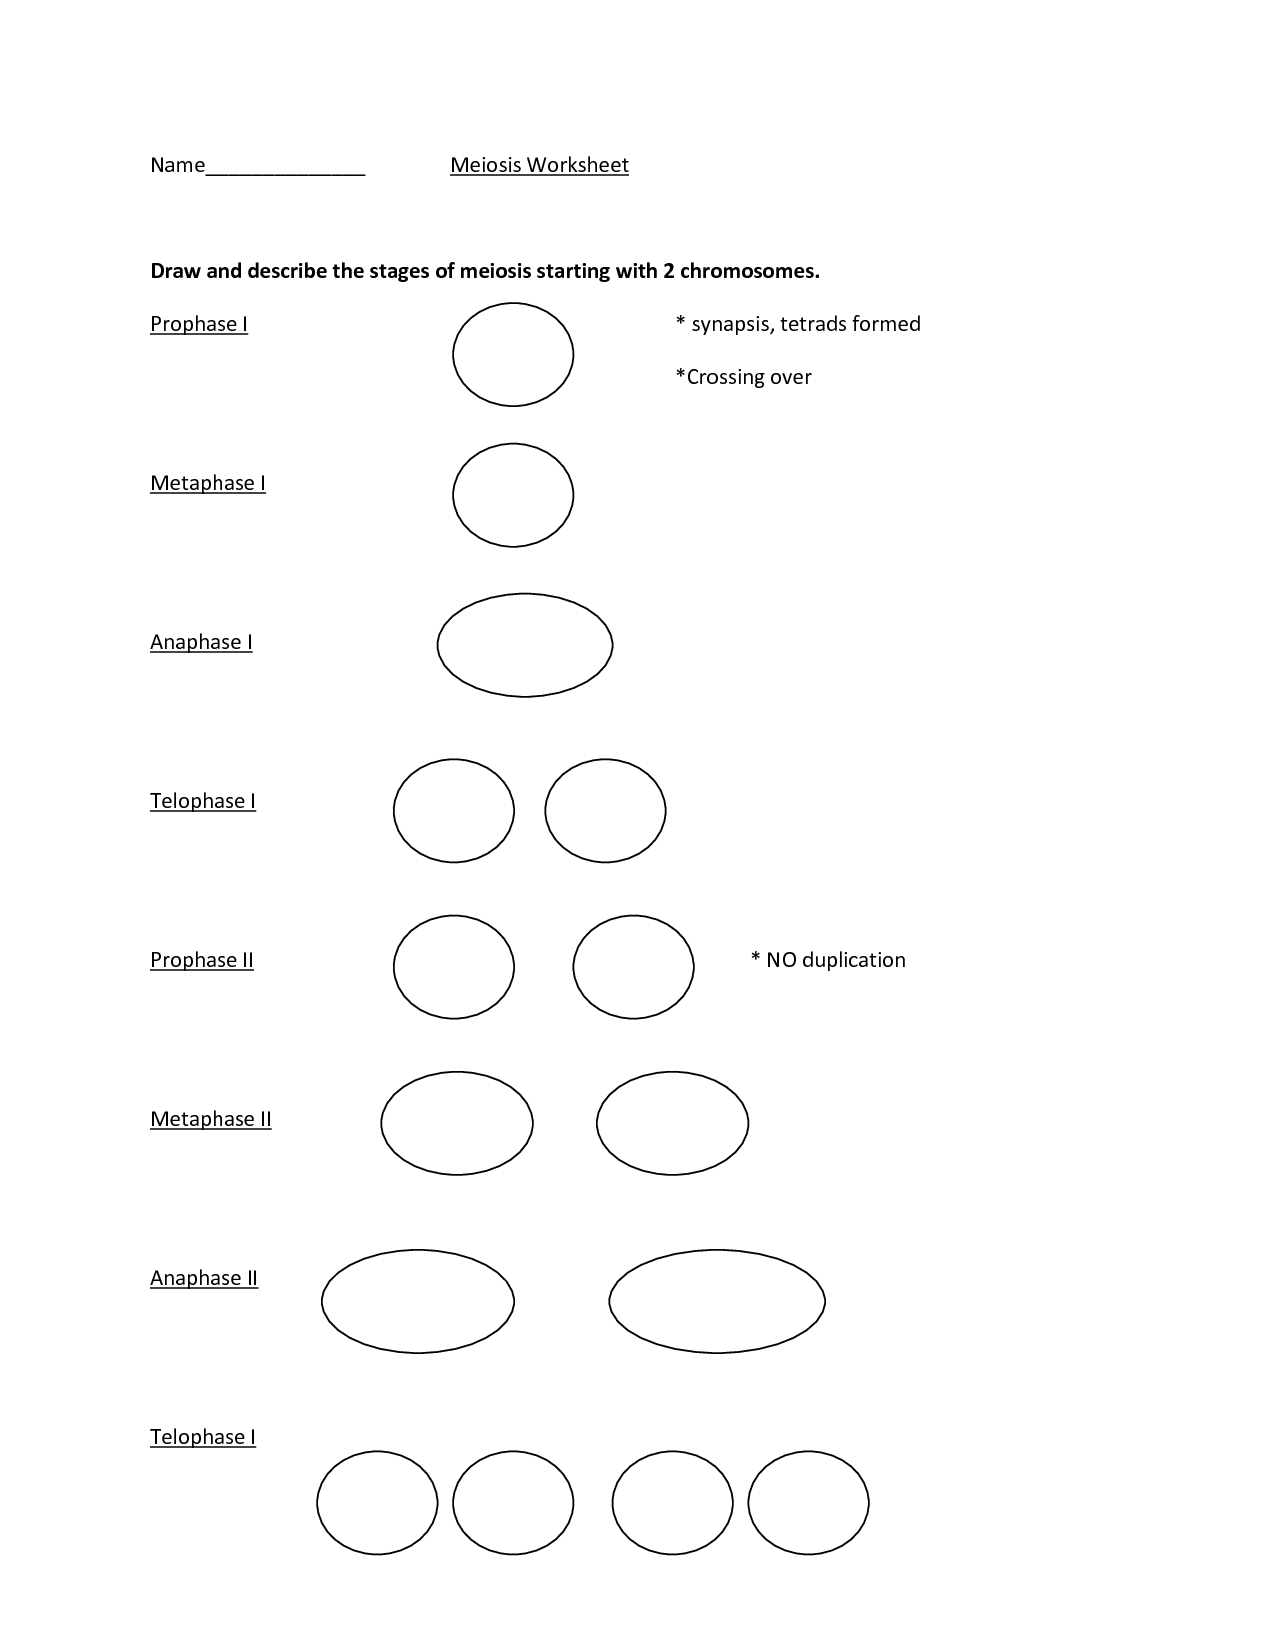 16-best-images-of-steps-of-meiosis-worksheet-answers-meiosis-stages-worksheet-meiosis